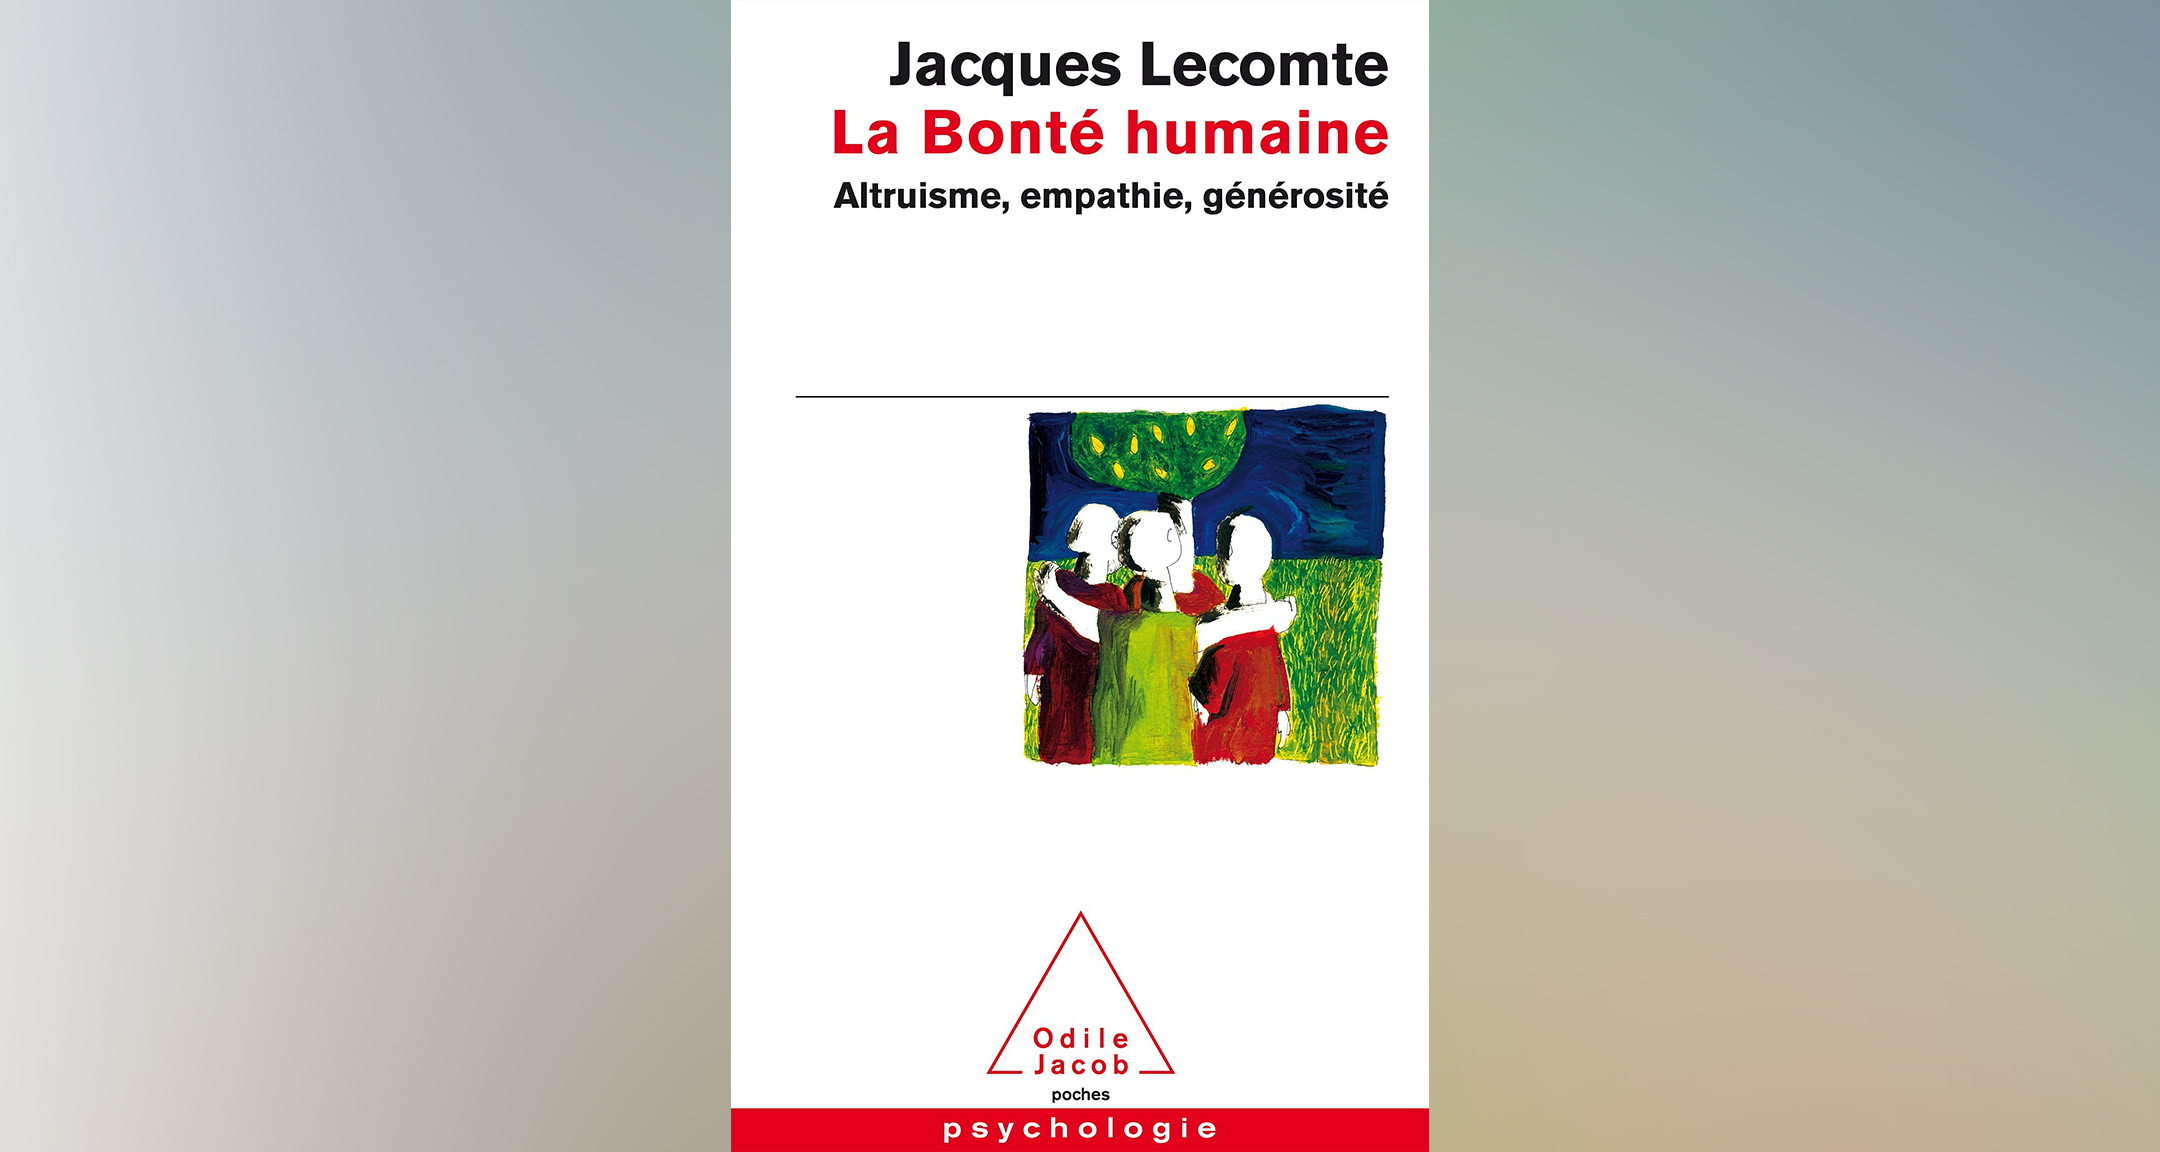 La Bonté humaine, Jacques Lecomte